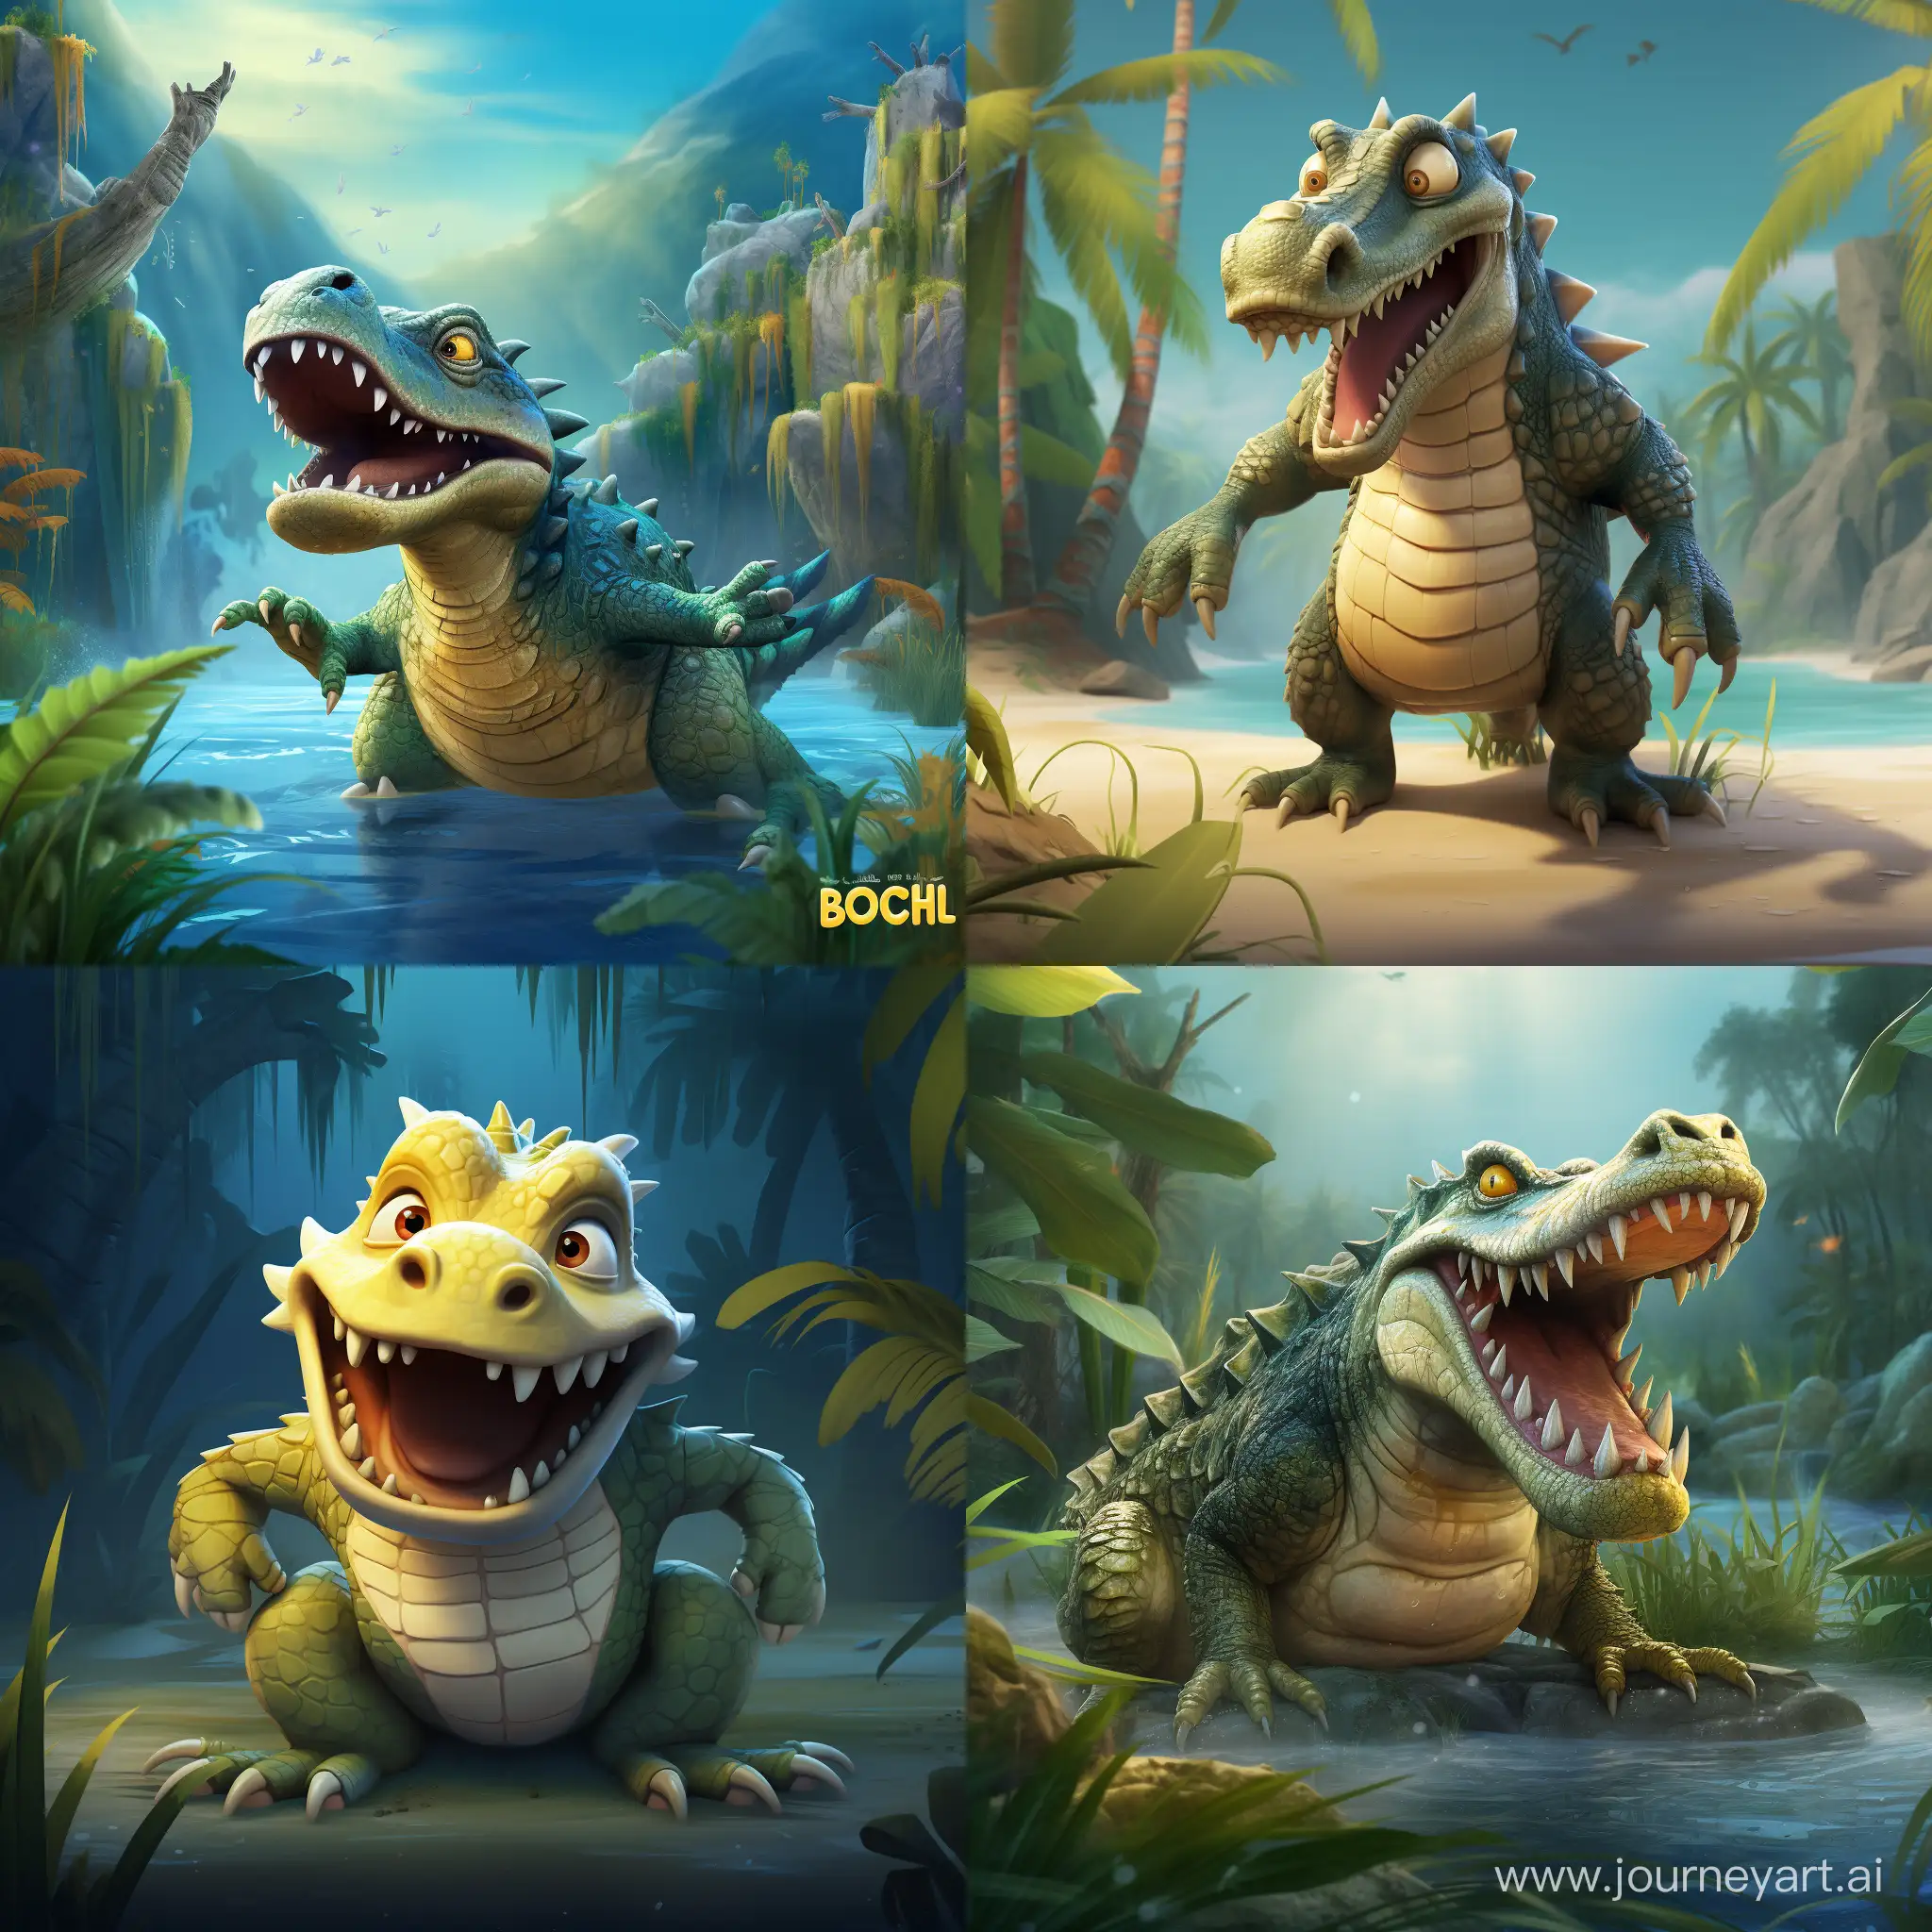 Jogo-Do-Bicho-Crocodile-Art-Colorful-and-Majestic-Reptile-in-11-Aspect-Ratio